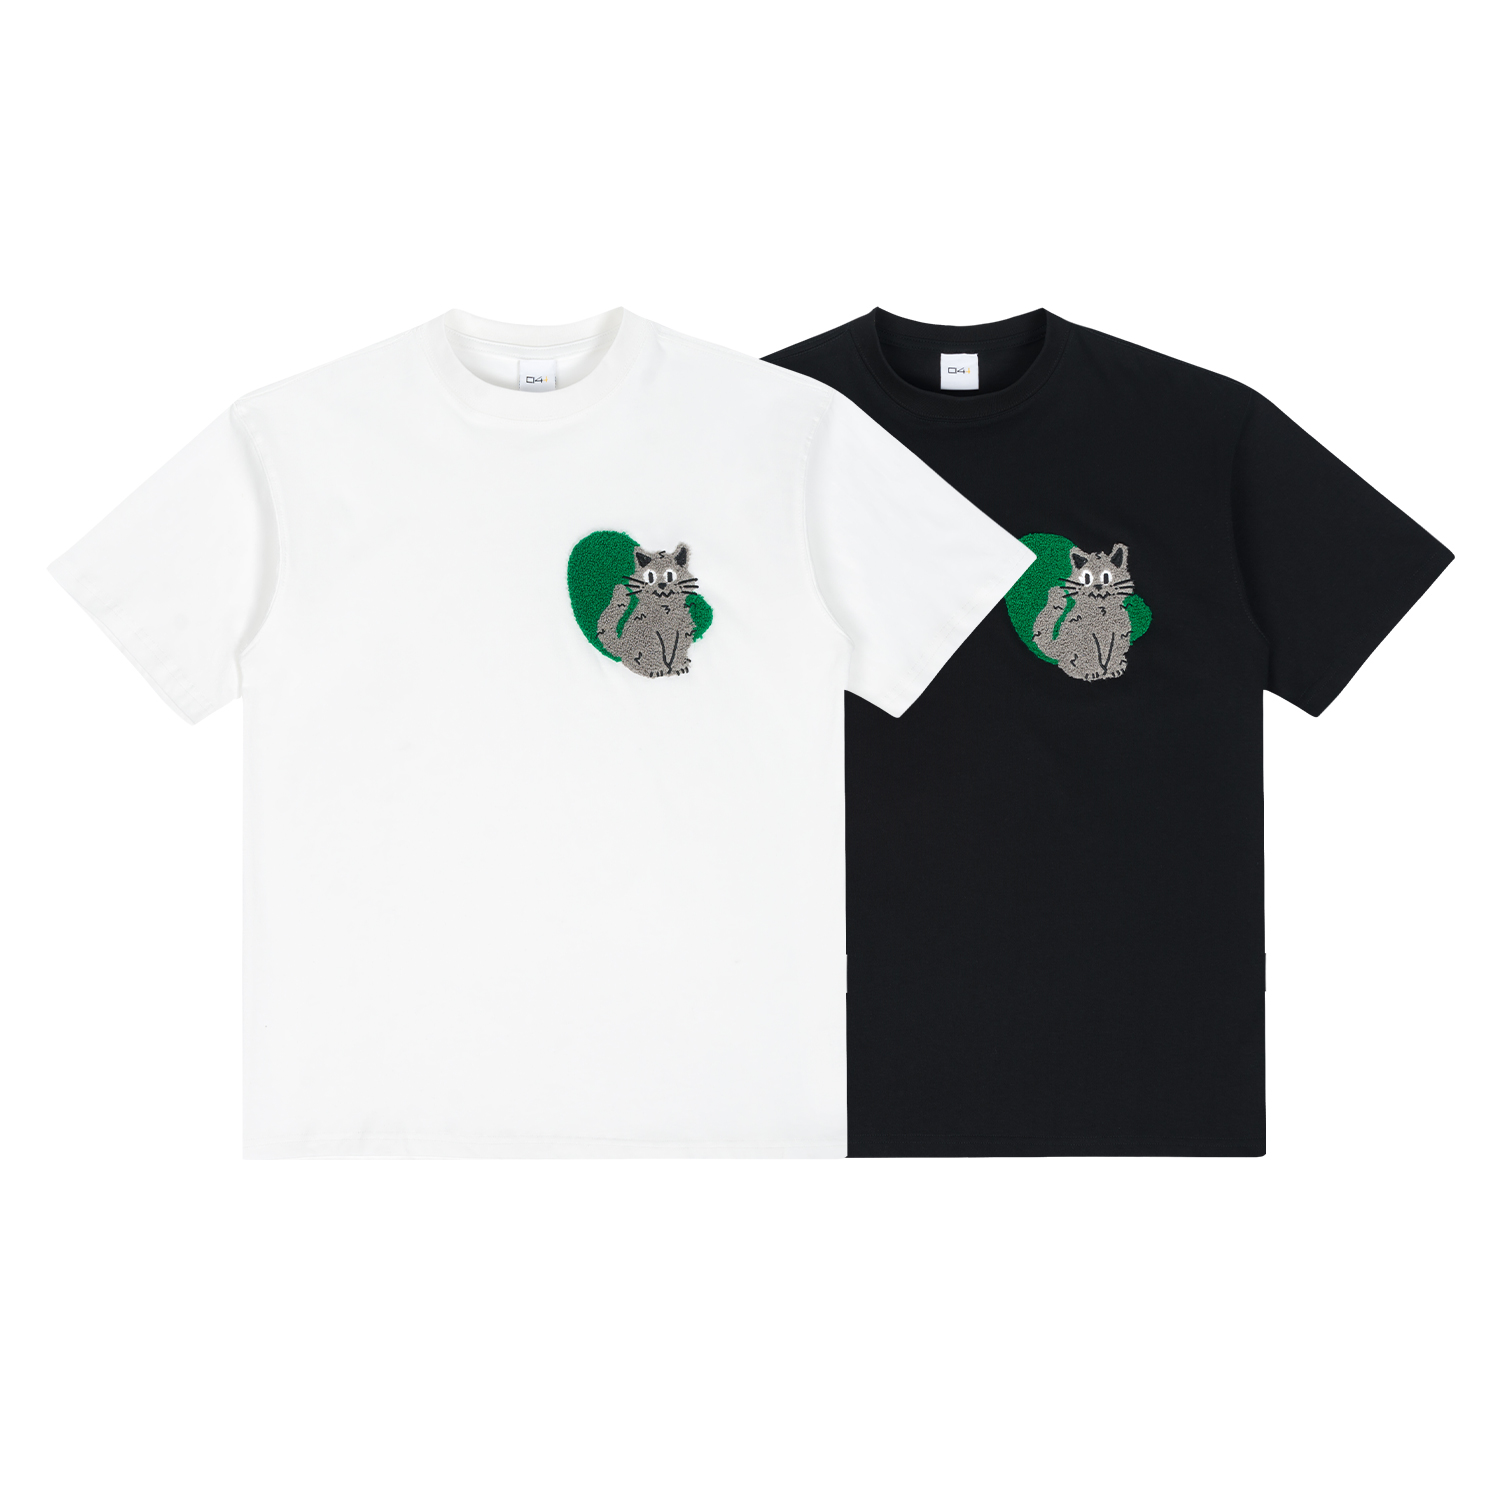 C14 online SS22 黑色/白色 猫咪图案毛巾绣短袖T恤